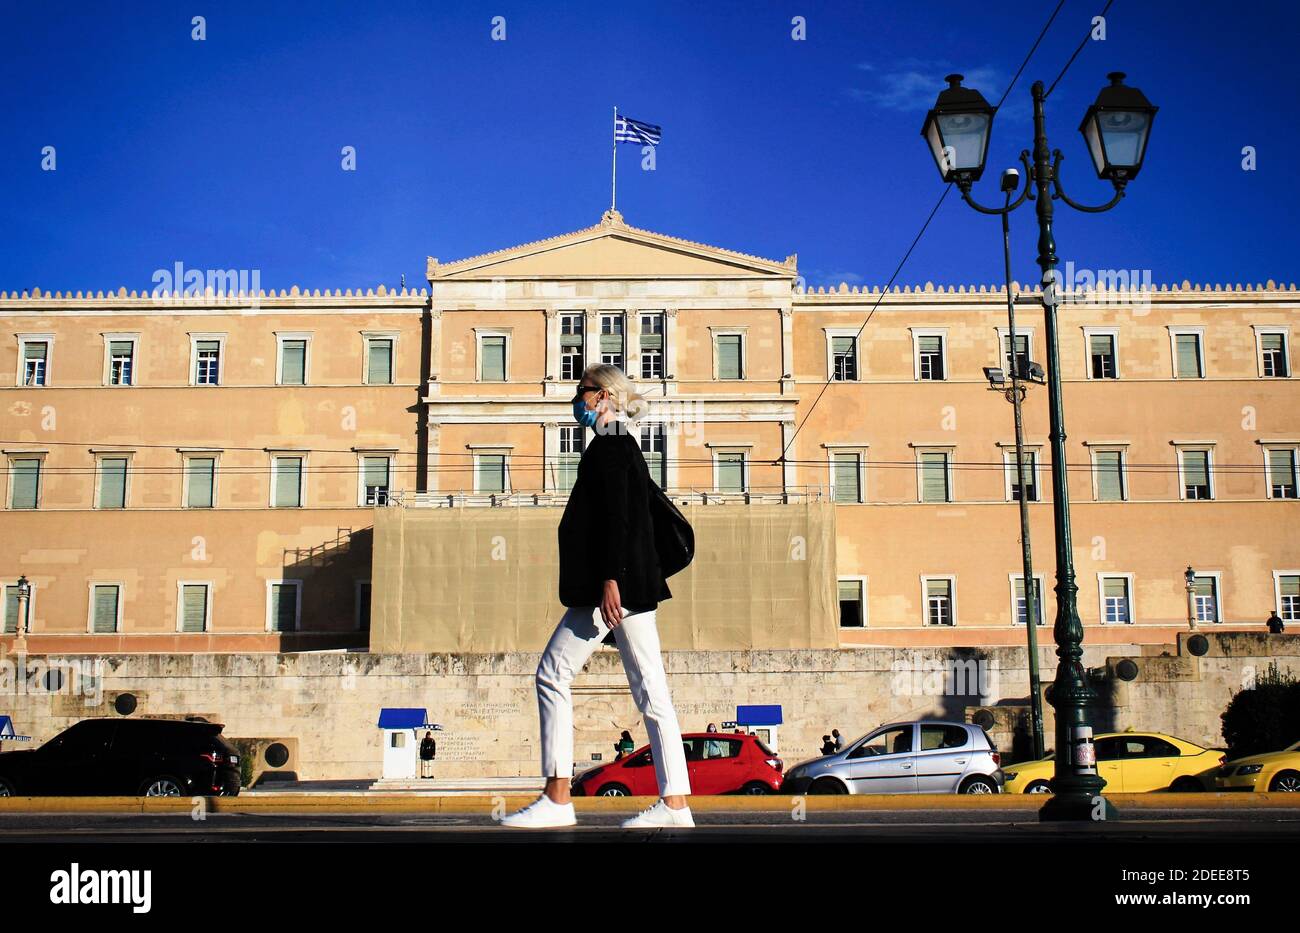 Menschen auf dem Syntagma-Platz mit dem griechischen Parlament im Hintergrund - Athen, Griechenland, 5. November 2020. Stockfoto